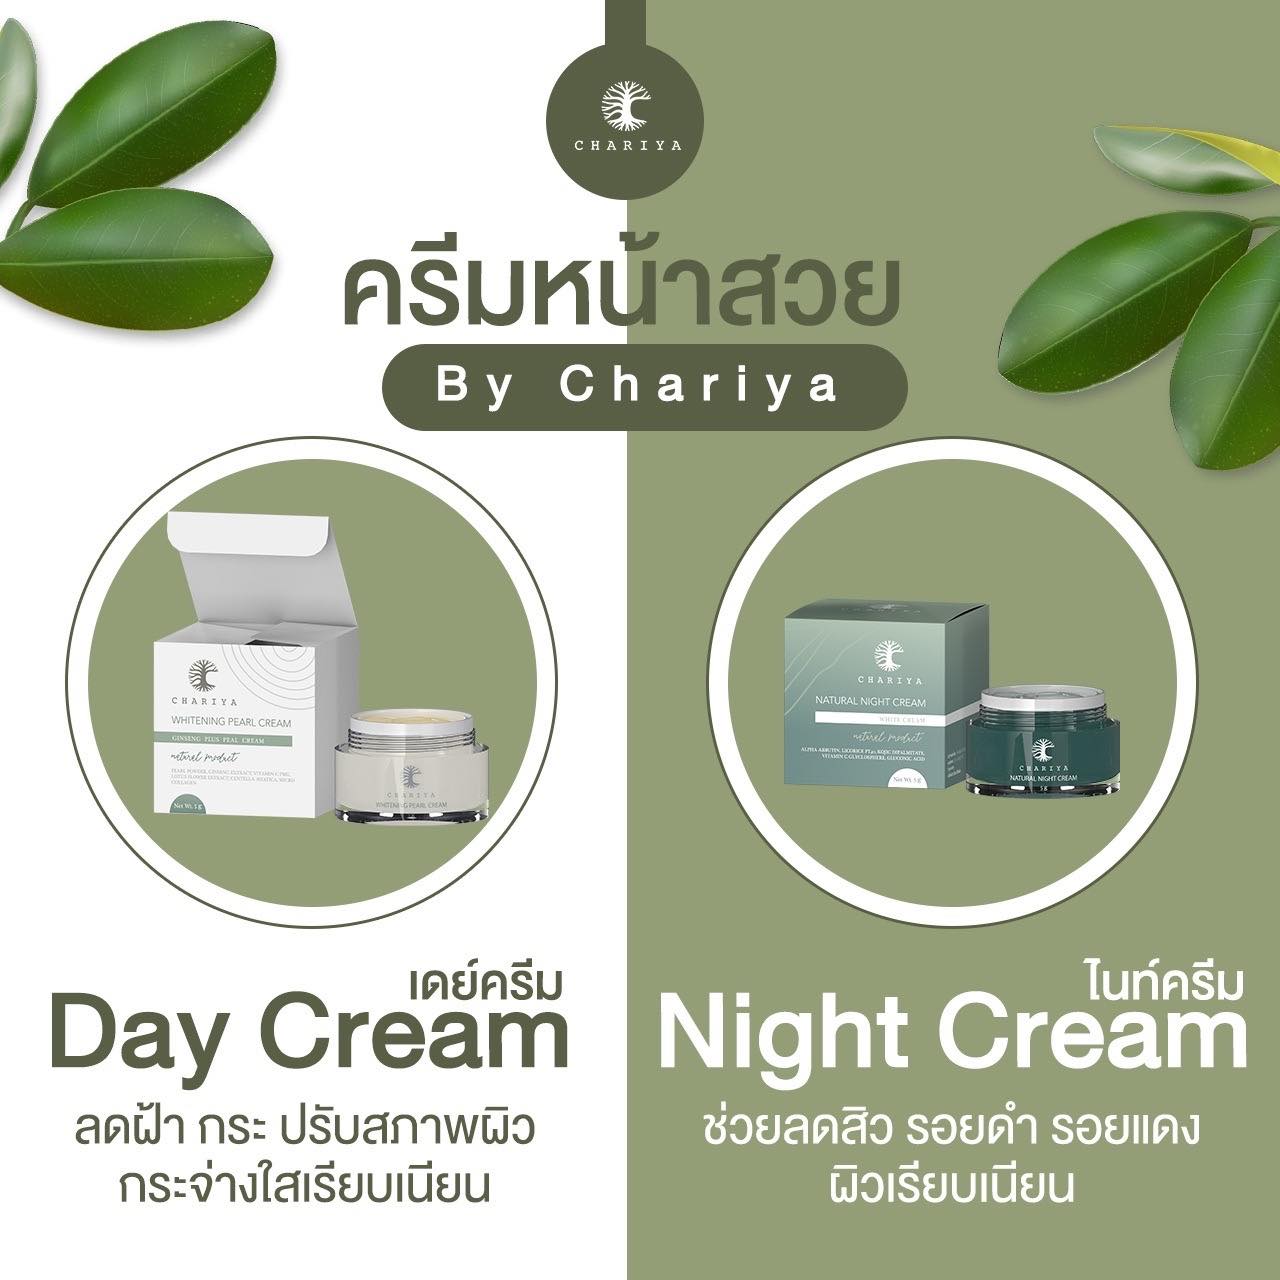 แนะนำ [ส่งฟรี] เดย์ครีม Day Cream 15g , ไนท์ครีม Night Cream 15g Chariya Skincare (ชาริยา สกินแคร์) ของแท้